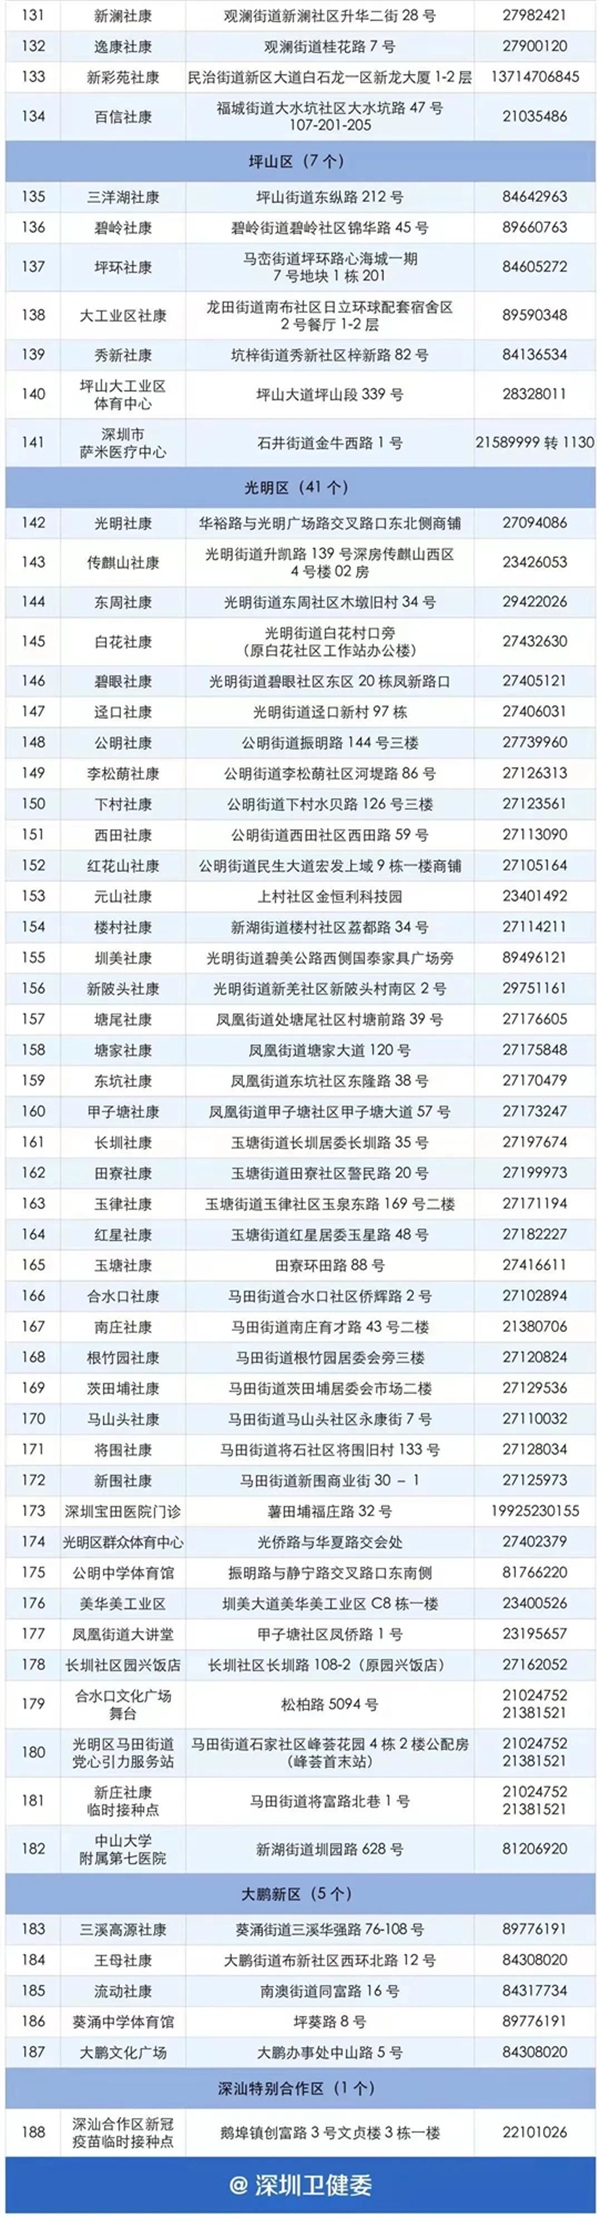 深圳12-17岁未成年人群新冠疫苗接种点一览表(非在校人群)